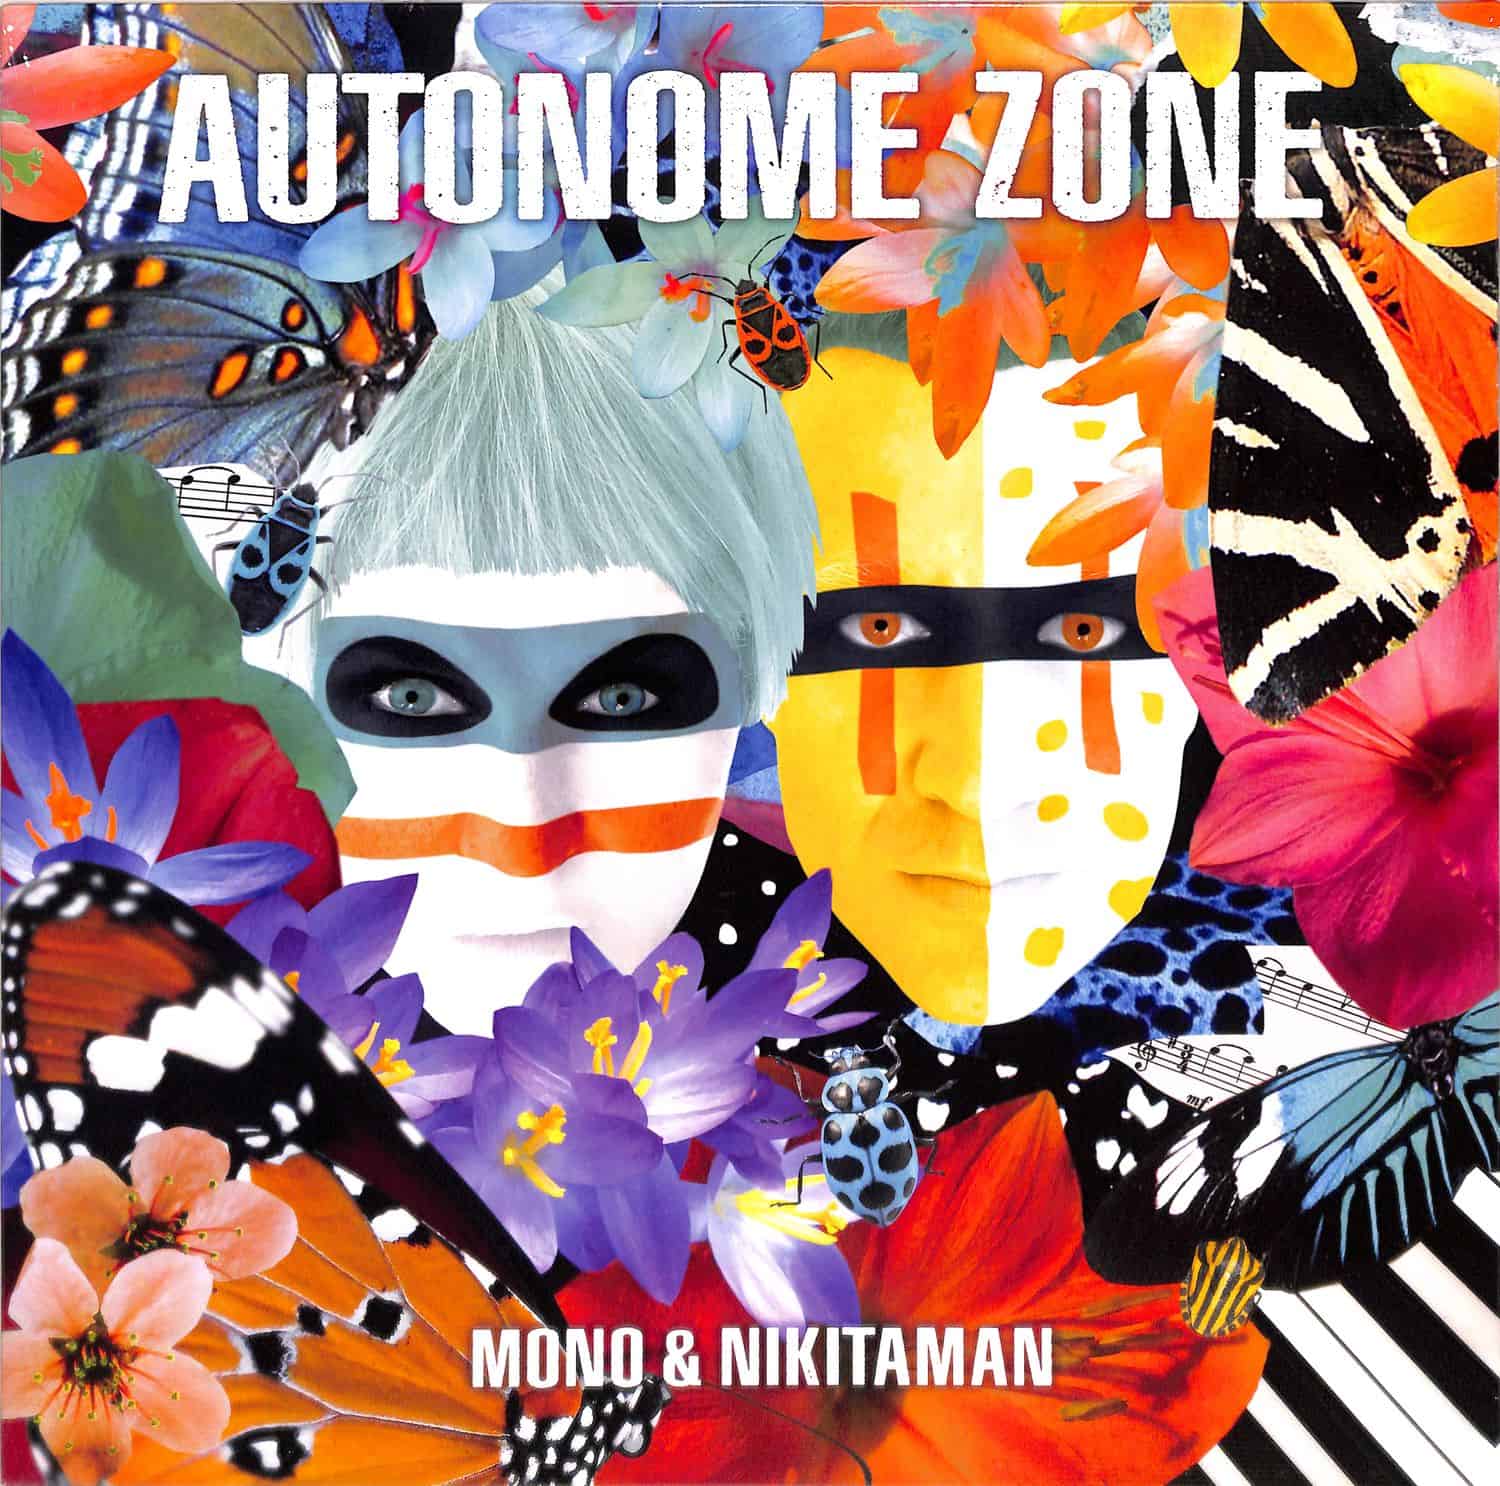 Mono & Nikitaman - AUTONOME ZONE 